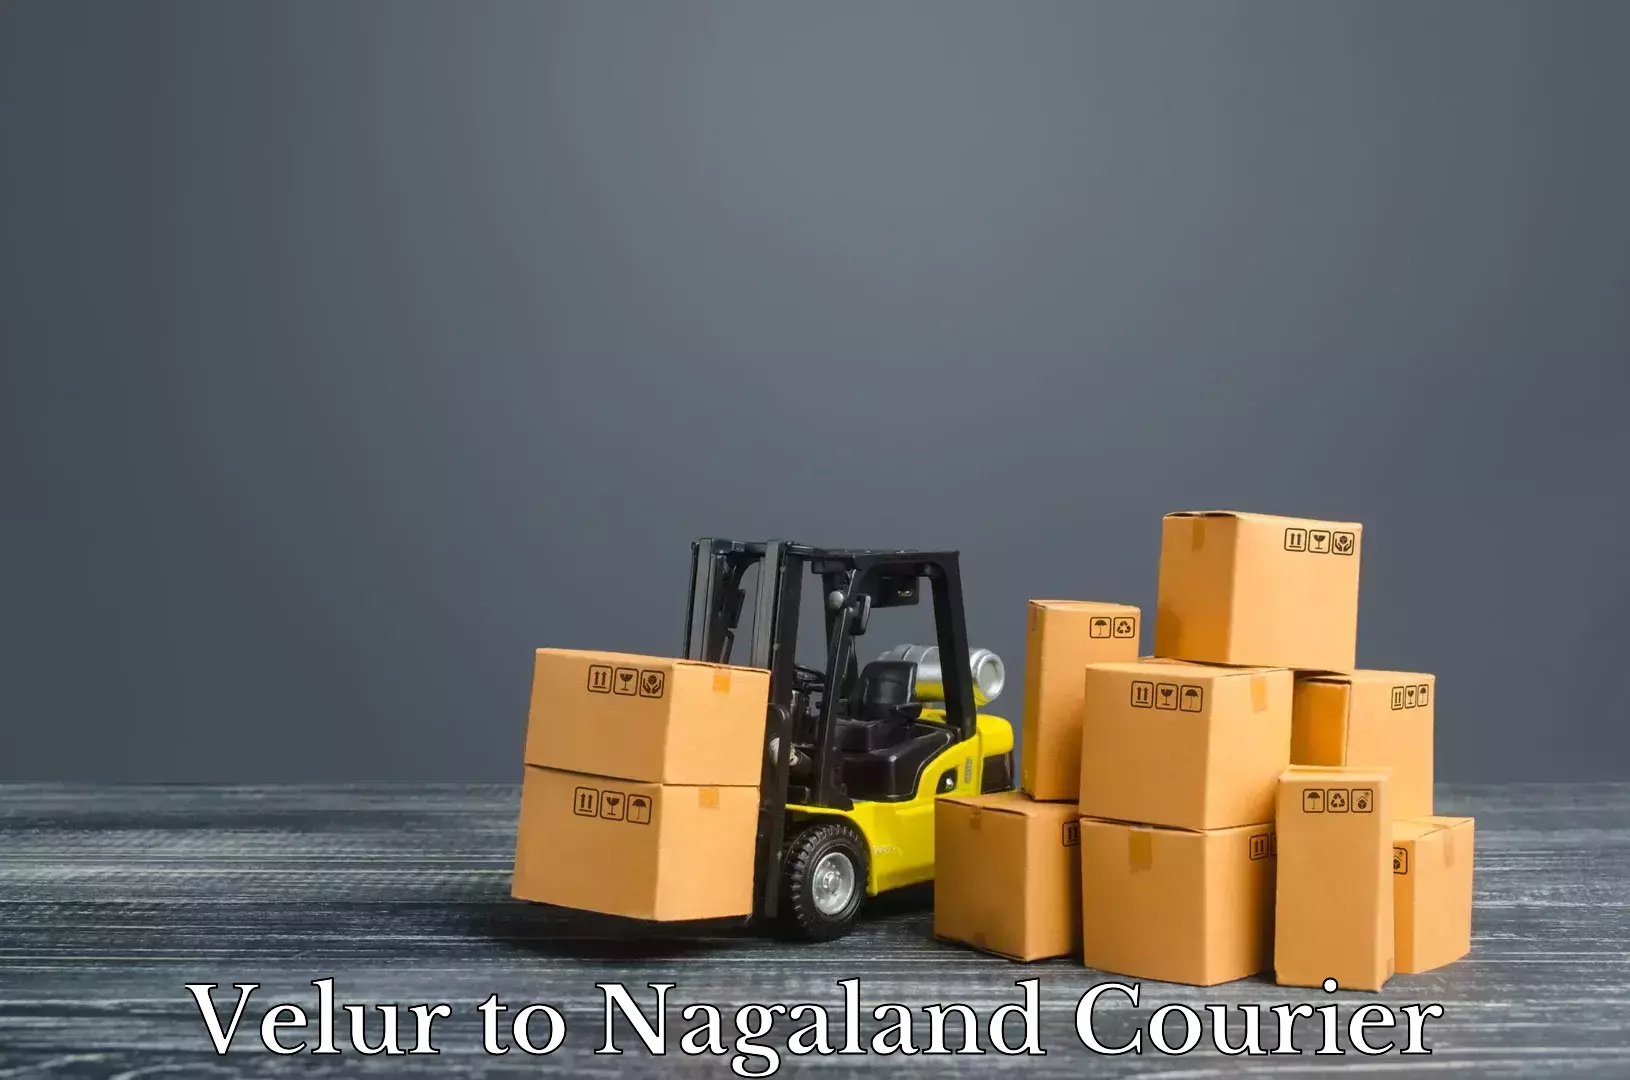 Luggage shipment processing Velur to Nagaland